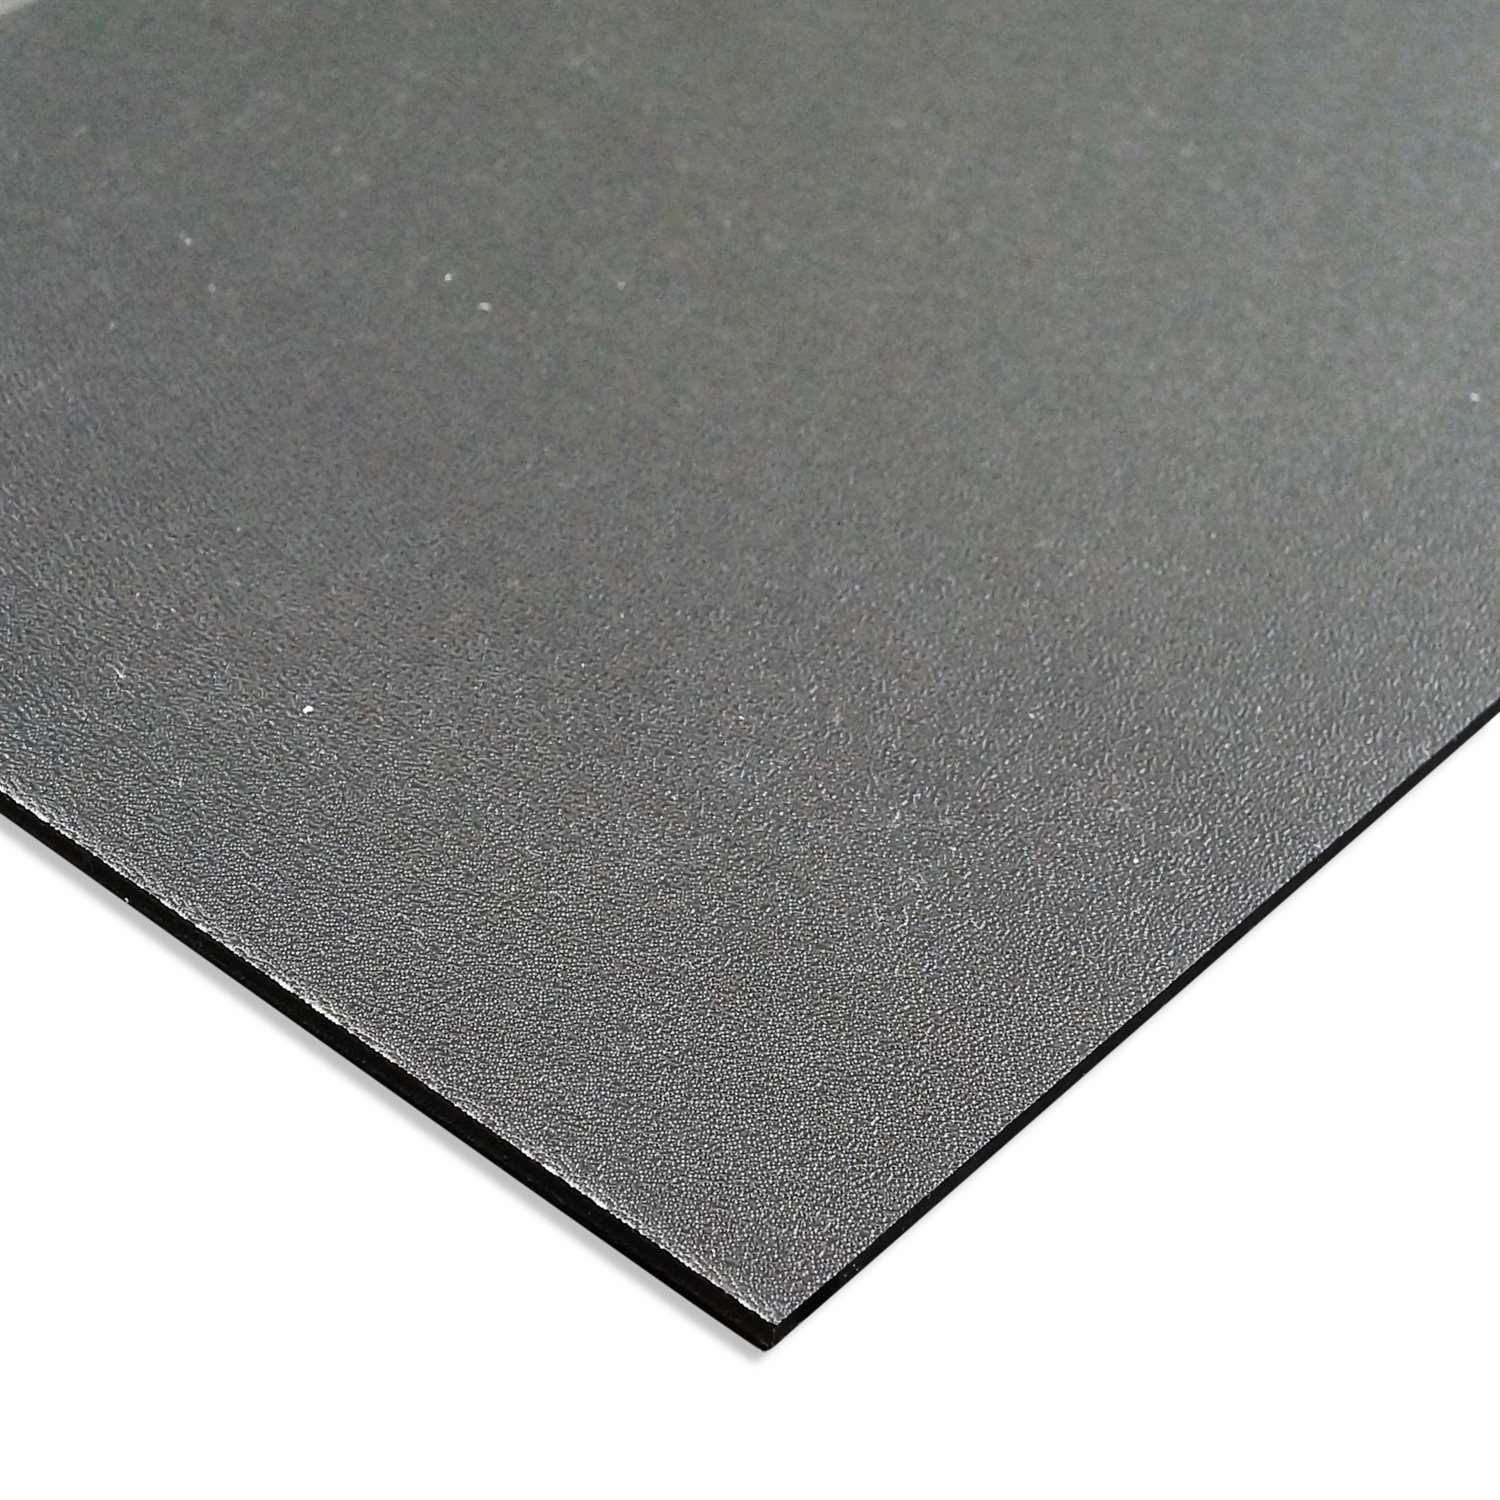 Plastique plaque ABS 4mm Noir 1000 x 500 mm (100 x 50 cm) Film de protection